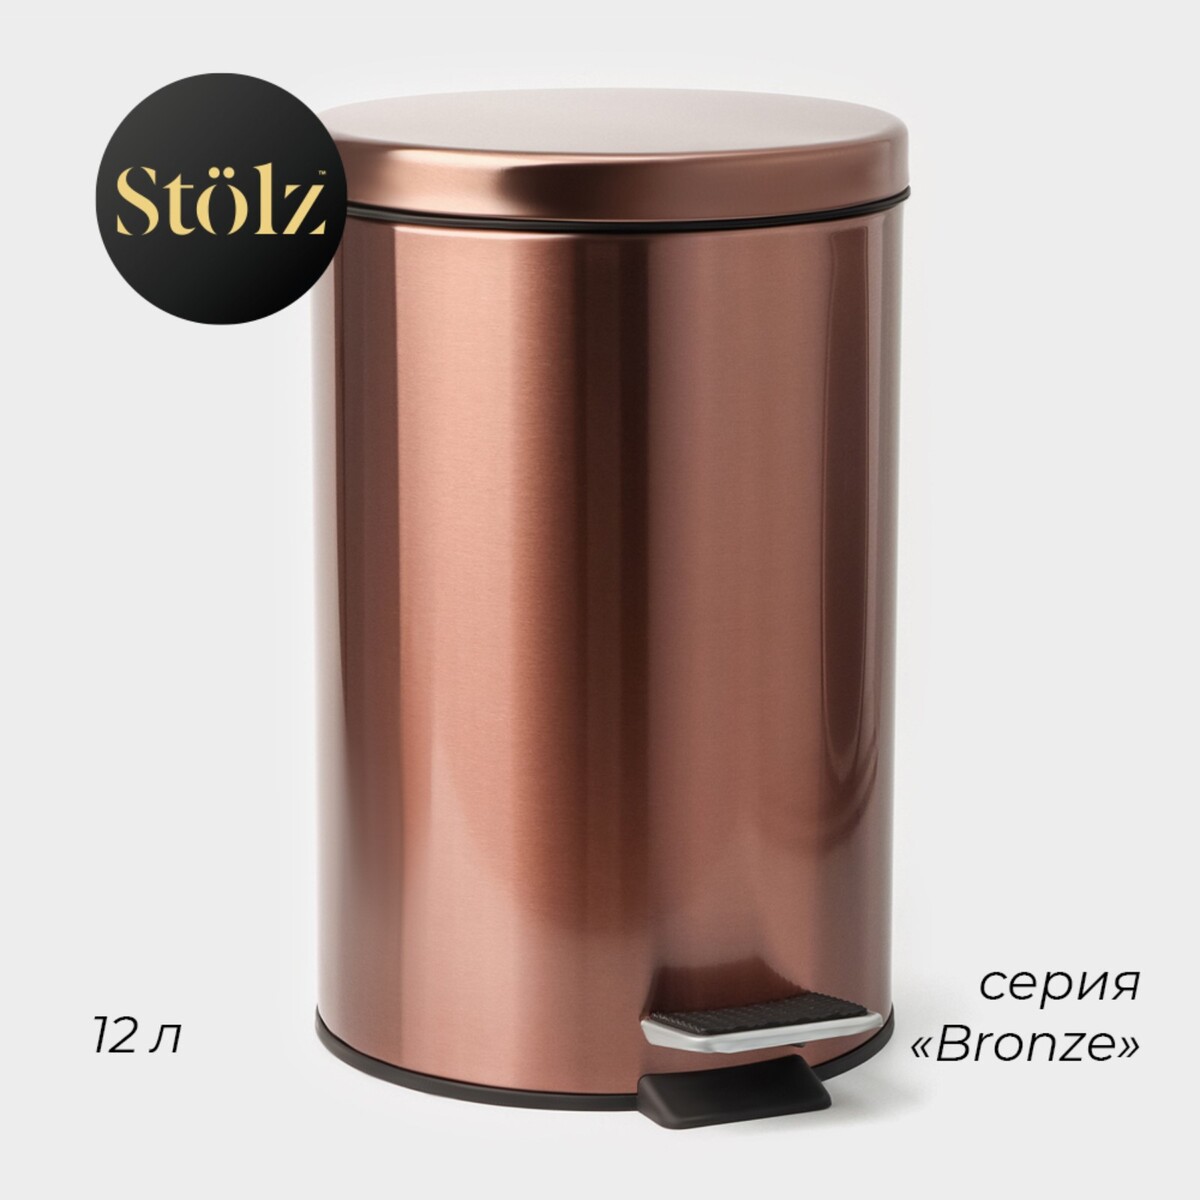 Ведро мусорное с педалью штольц stölz, 12 л, нержавеющая сталь, цвет бронзовый Stölz